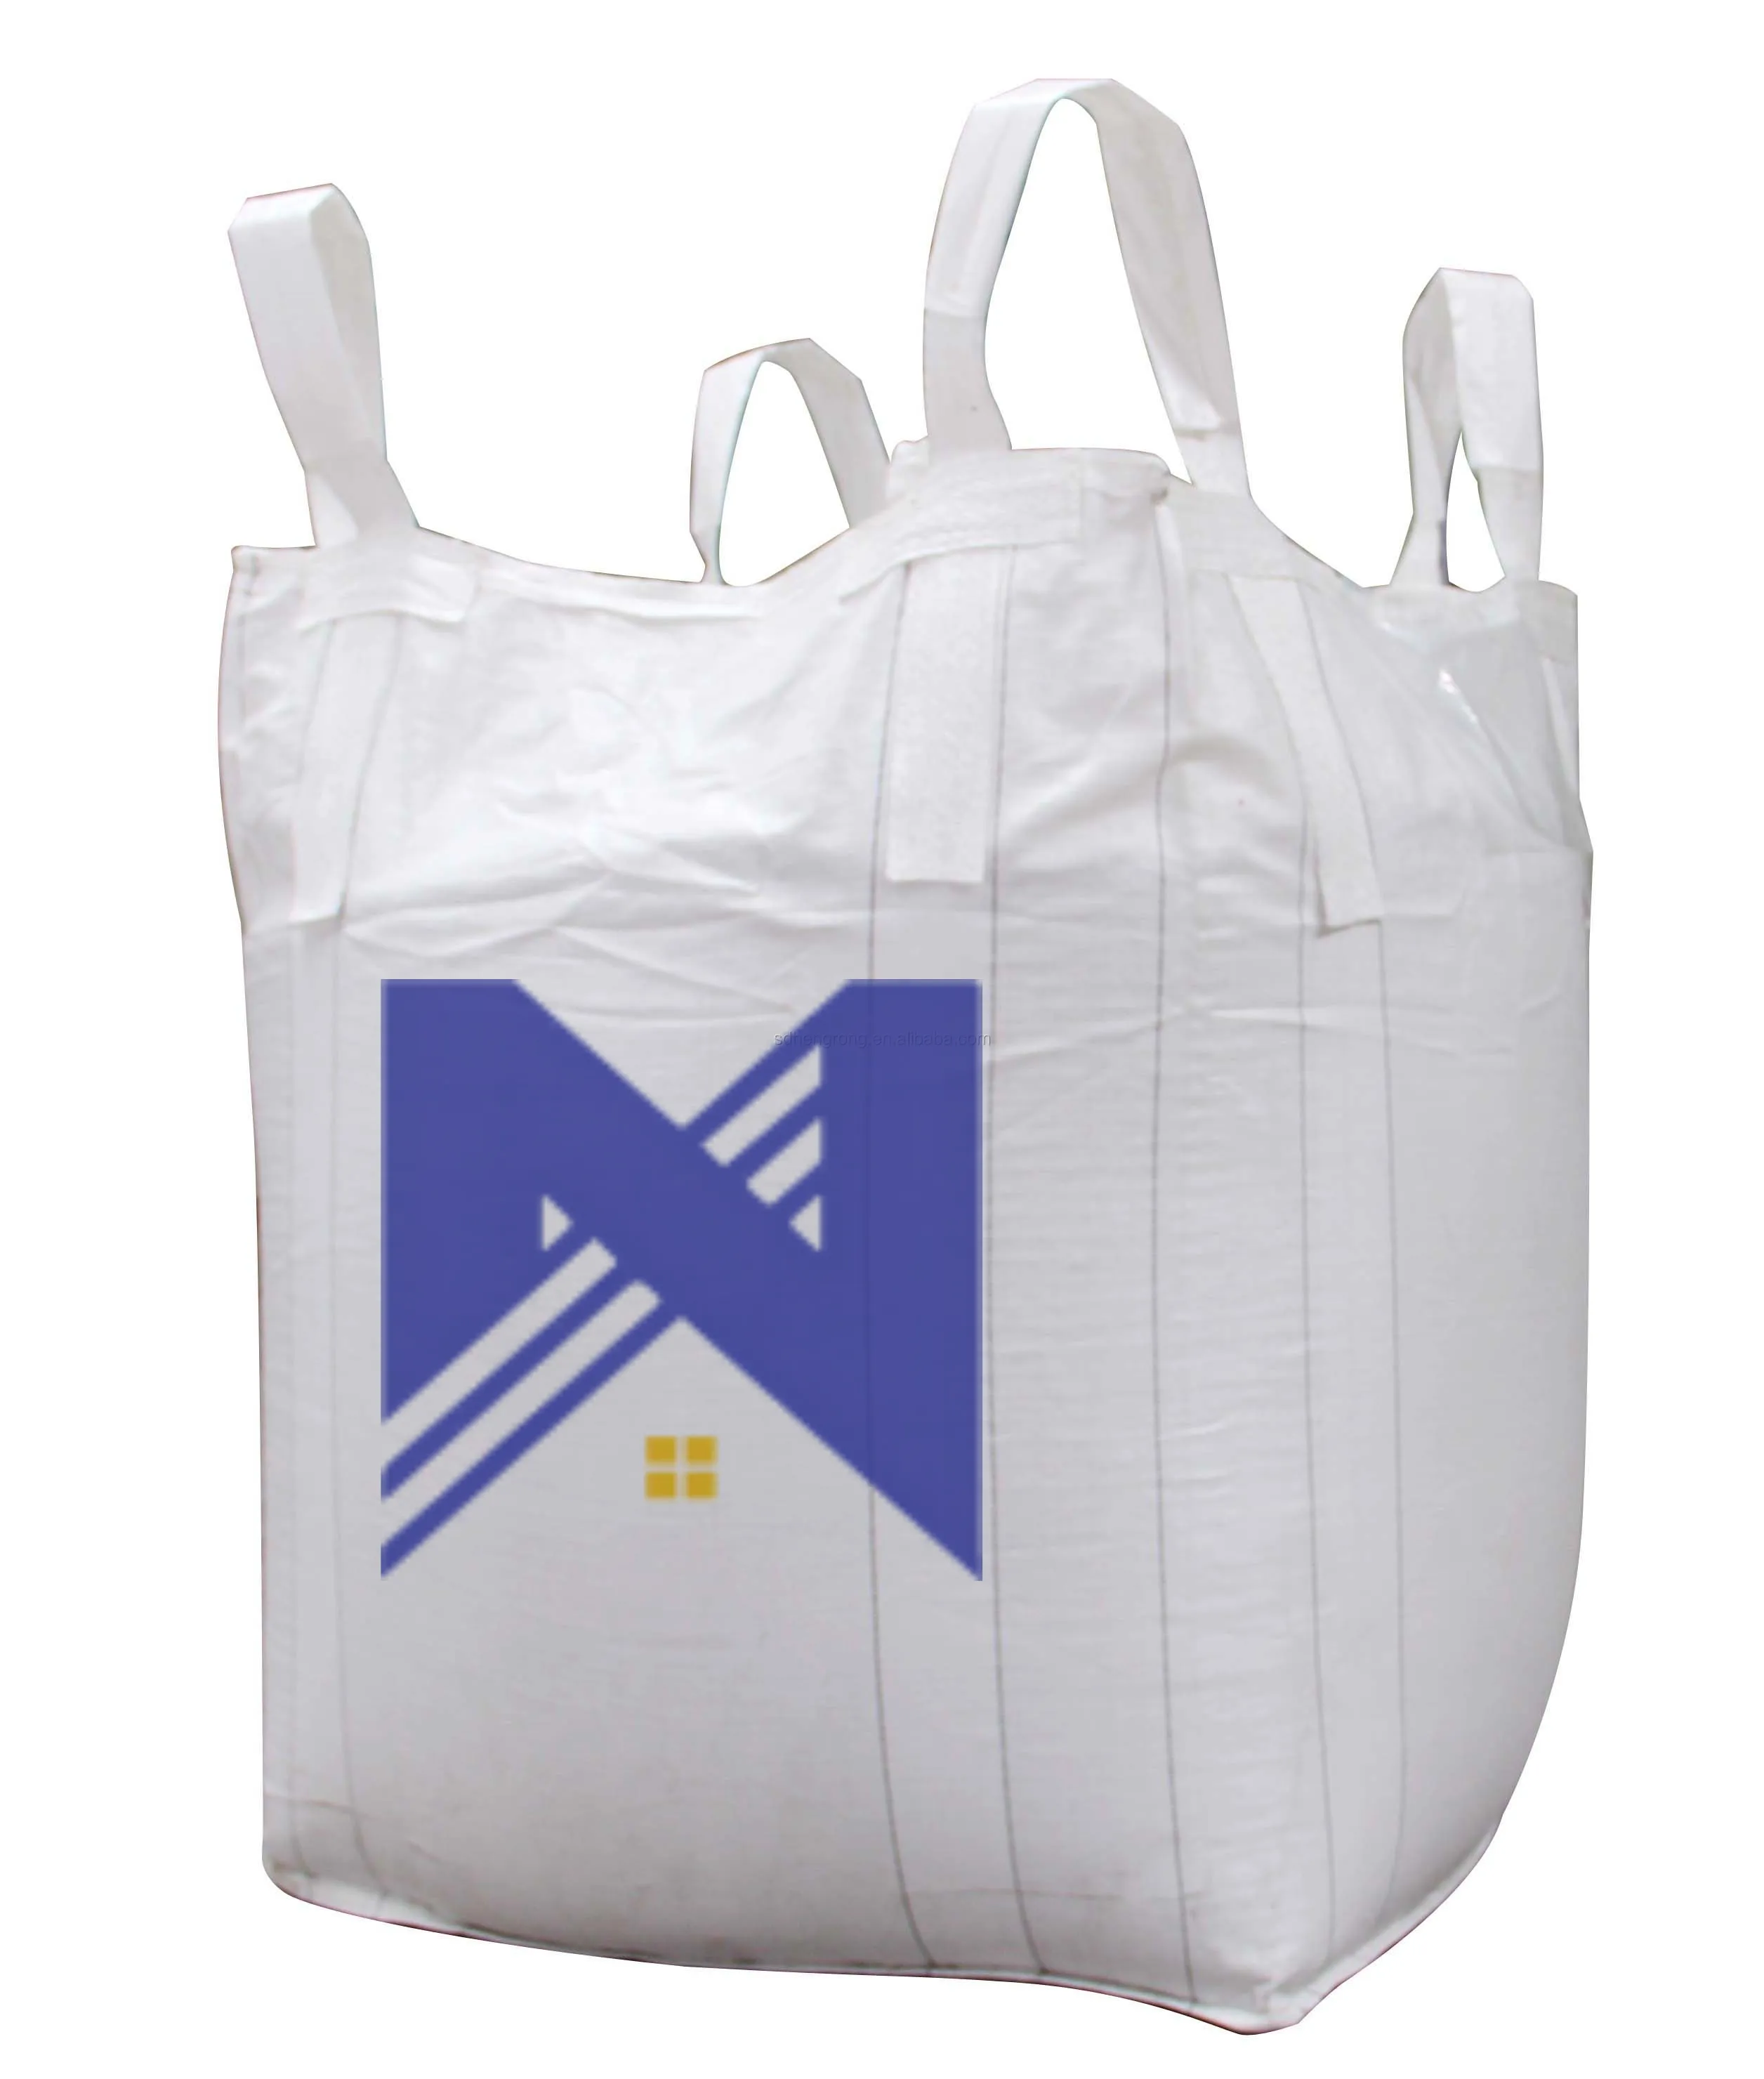 Sac de collecte des déchets sac à sauter FIBC sac en vrac a un poids léger, une forme simple qui peut économiser de l'espace et transporter commodément